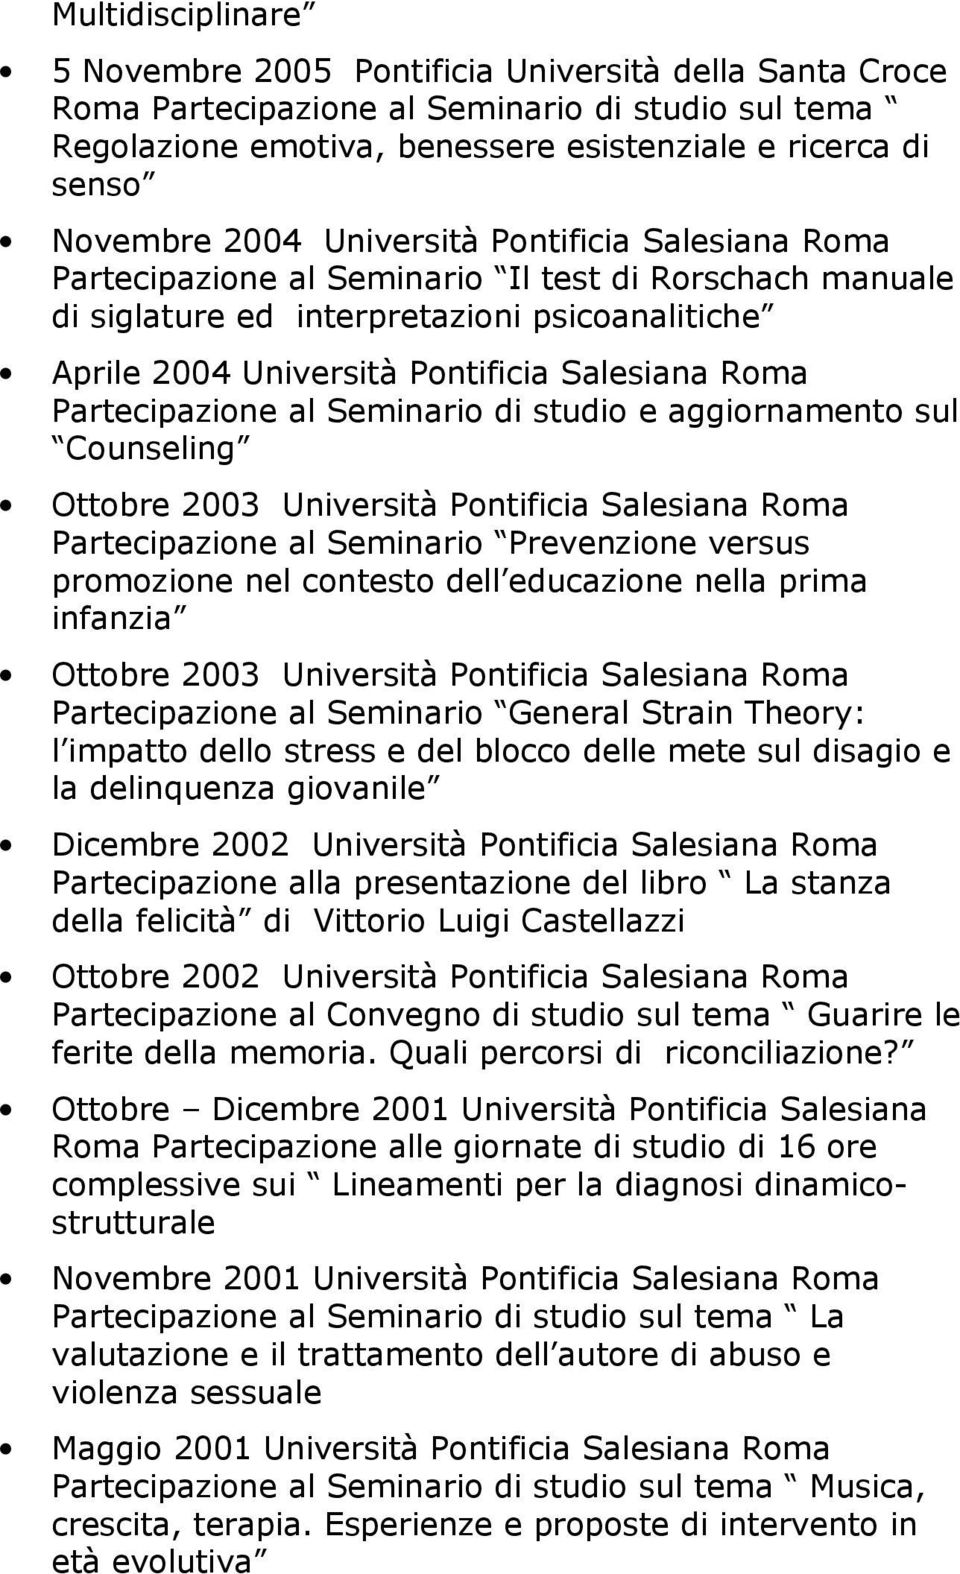 Partecipazione al Seminario di studio e aggiornamento sul Counseling Ottobre 2003 Università Pontificia Salesiana Roma Partecipazione al Seminario Prevenzione versus promozione nel contesto dell